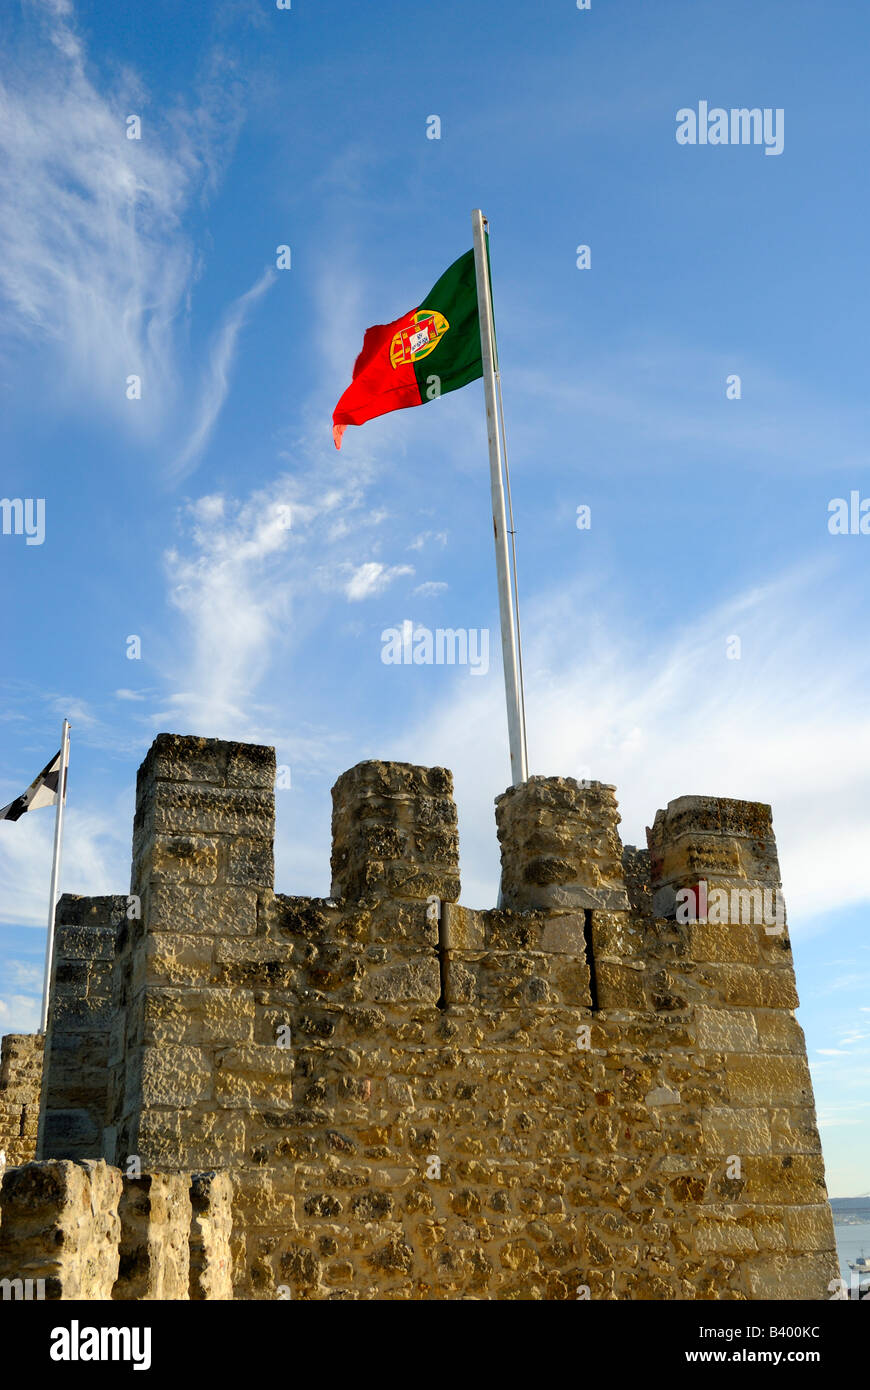 Einer der Türme des Castelo de Sao Jorge, der Burg von St George, in Lissabon, Portugal Stockfoto